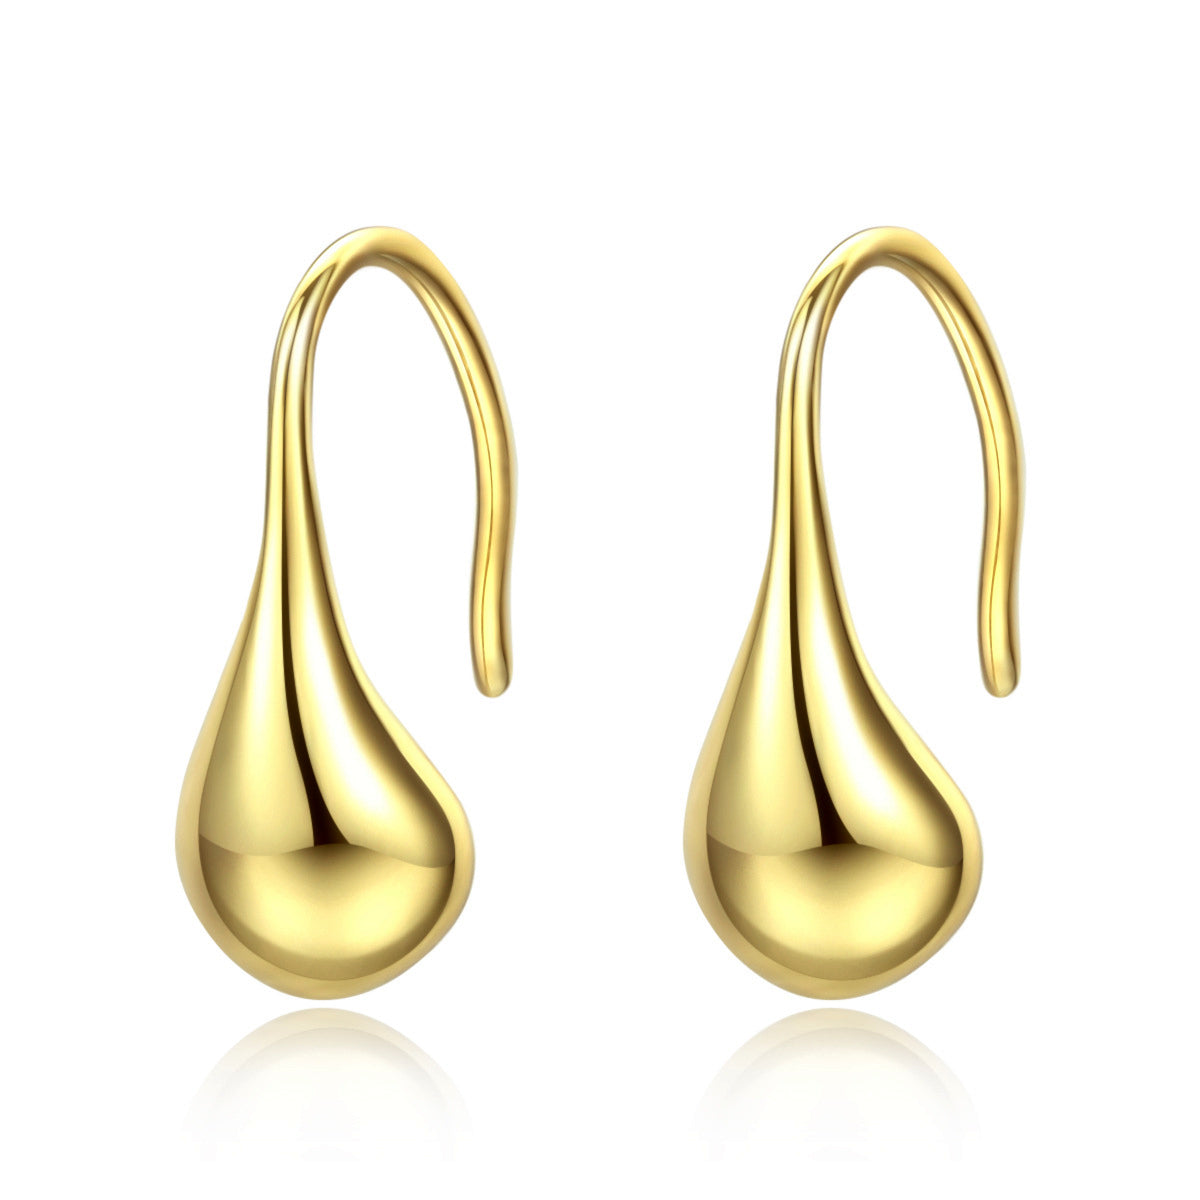 925 Sterling Silver Drop Earrings, Simple Hook Earrings, Fashion Jewelry AL845